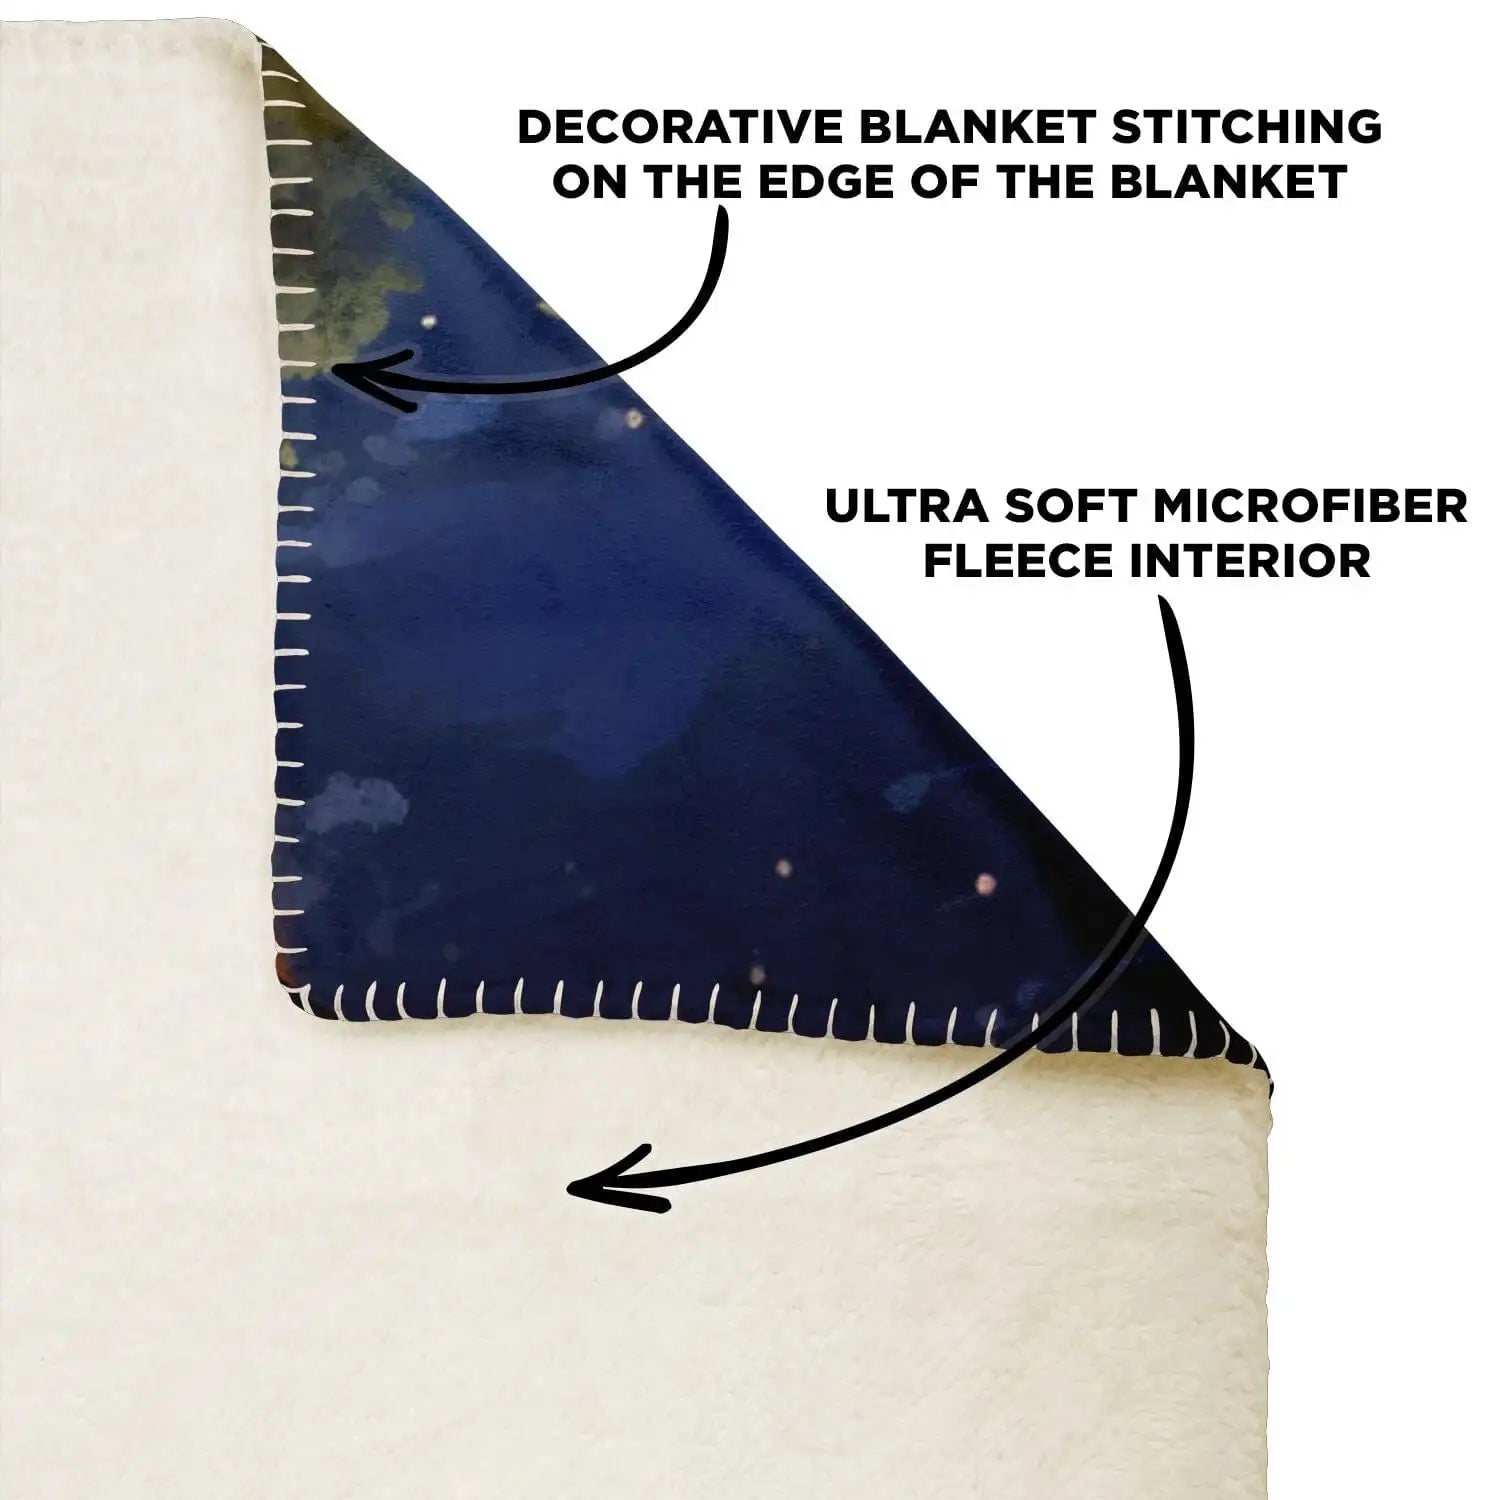 Ultra softmicrofiber fleece Microfleece blanket